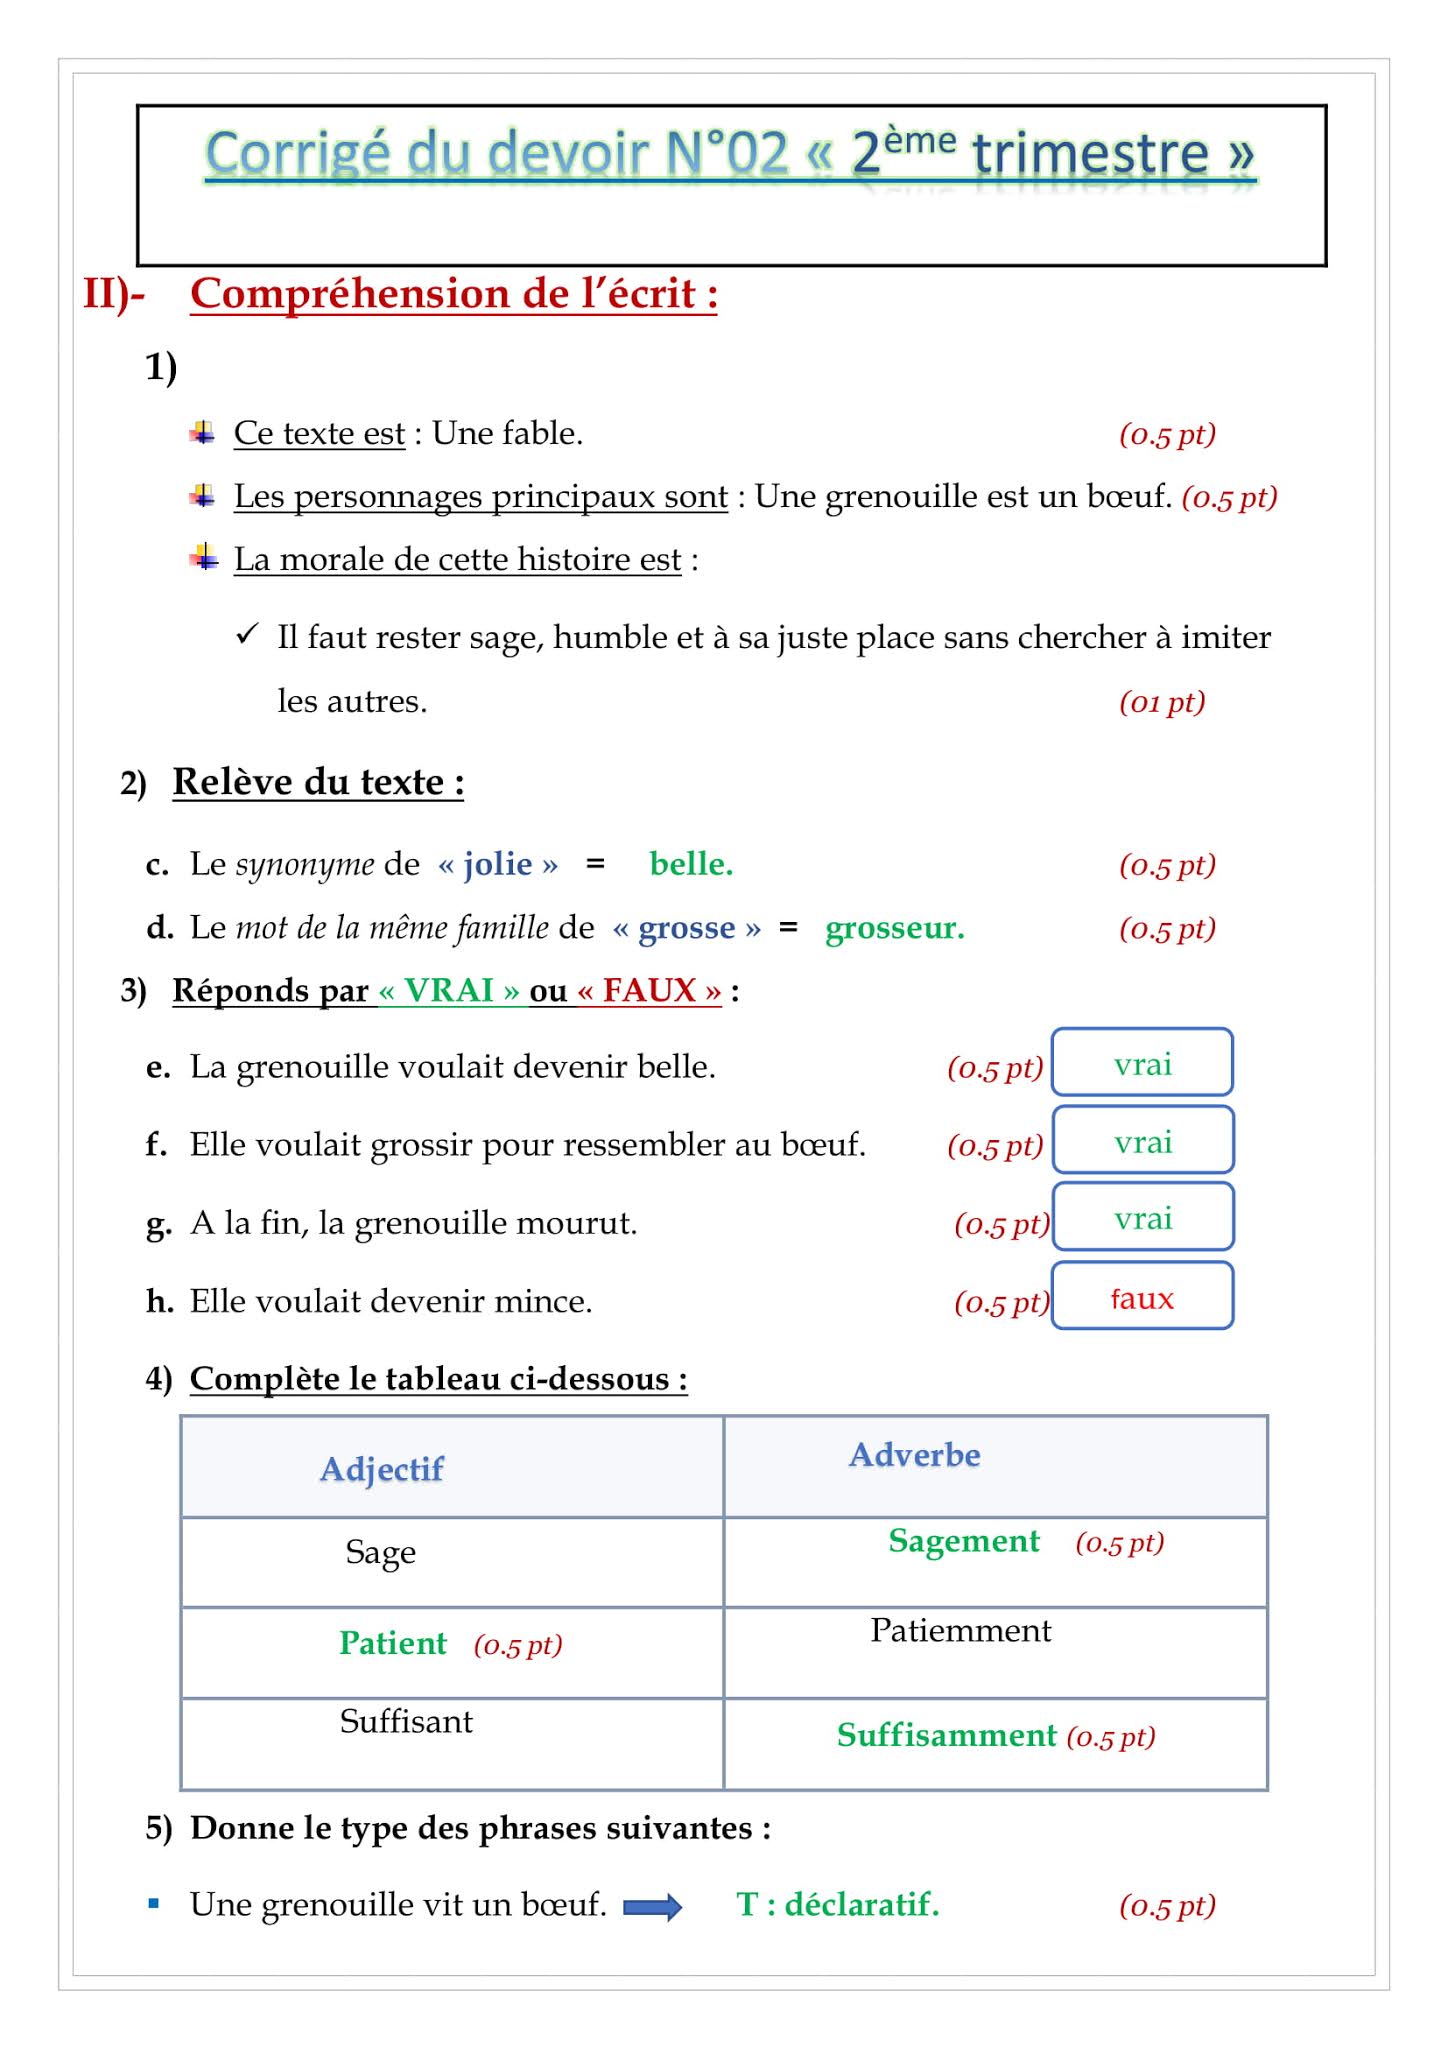 فرض اللغة الفرنسية الفصل الثاني للسنة الثانية متوسط - الجيل الثاني نموذج 3